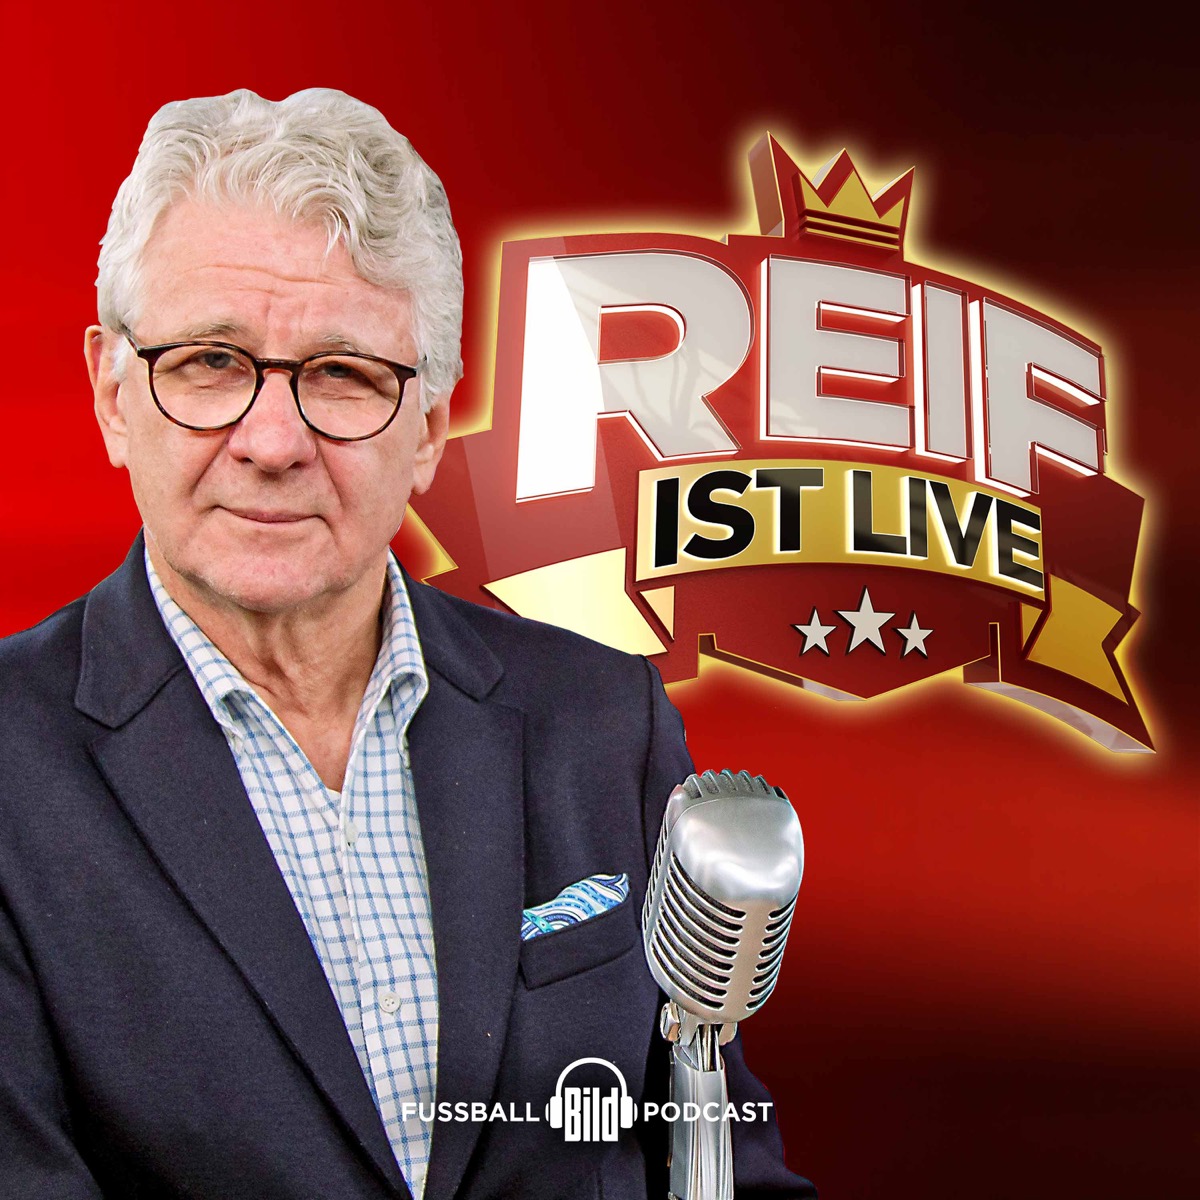 Reif ist live - Fußball-Podcast von BILD | Lyssna här | Poddtoppen.se